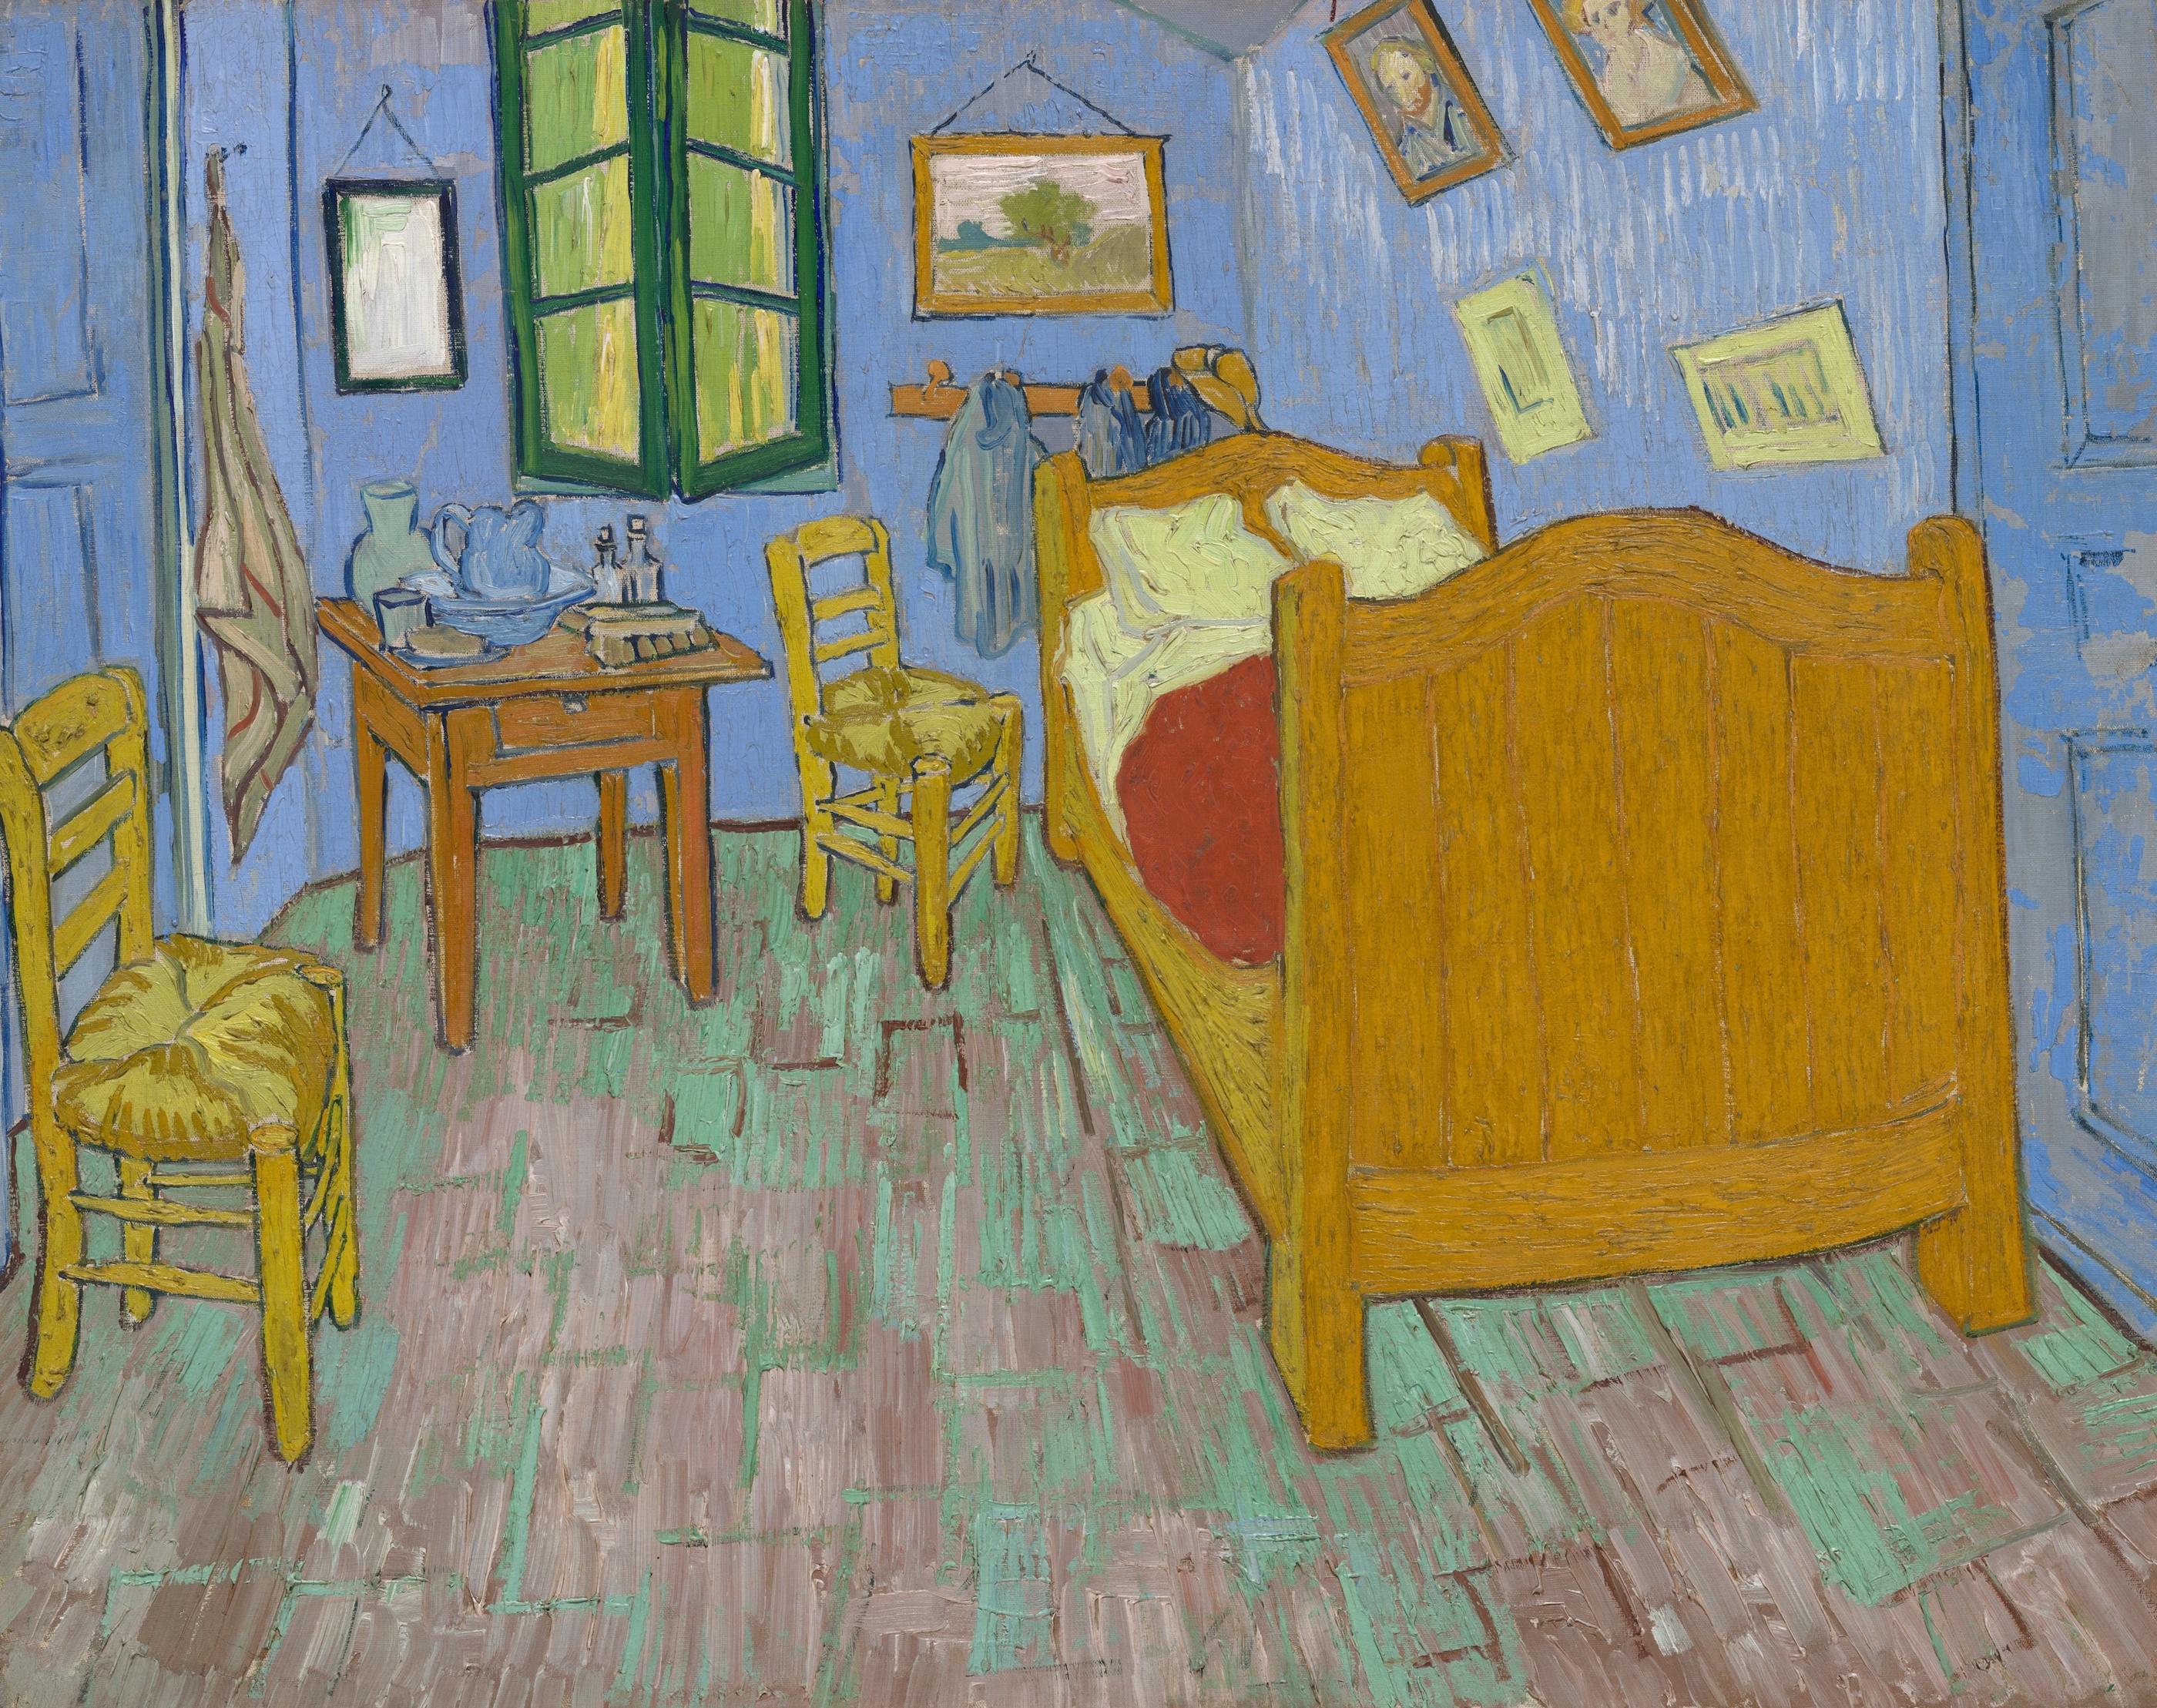 غُرفةُ النوم by فينسنت فان جوخ - 1889 - الأبعاد: 73,6 × 92,3 سم 